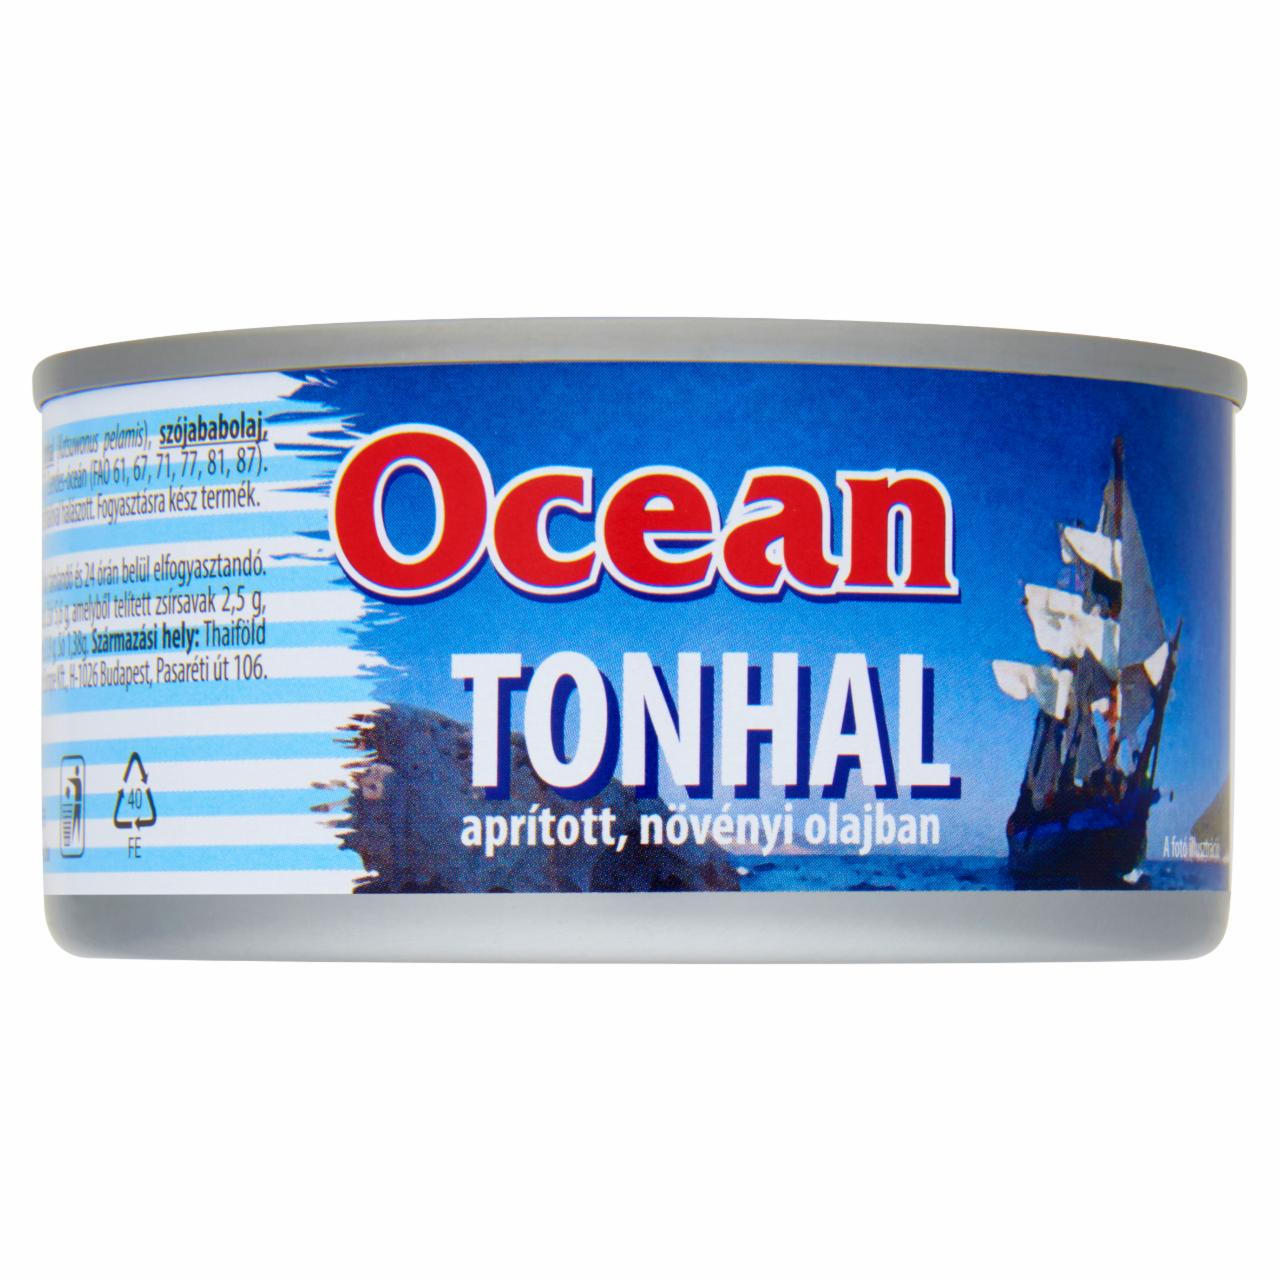 Képek - Ocean aprított tonhal növényi olajban 185 g